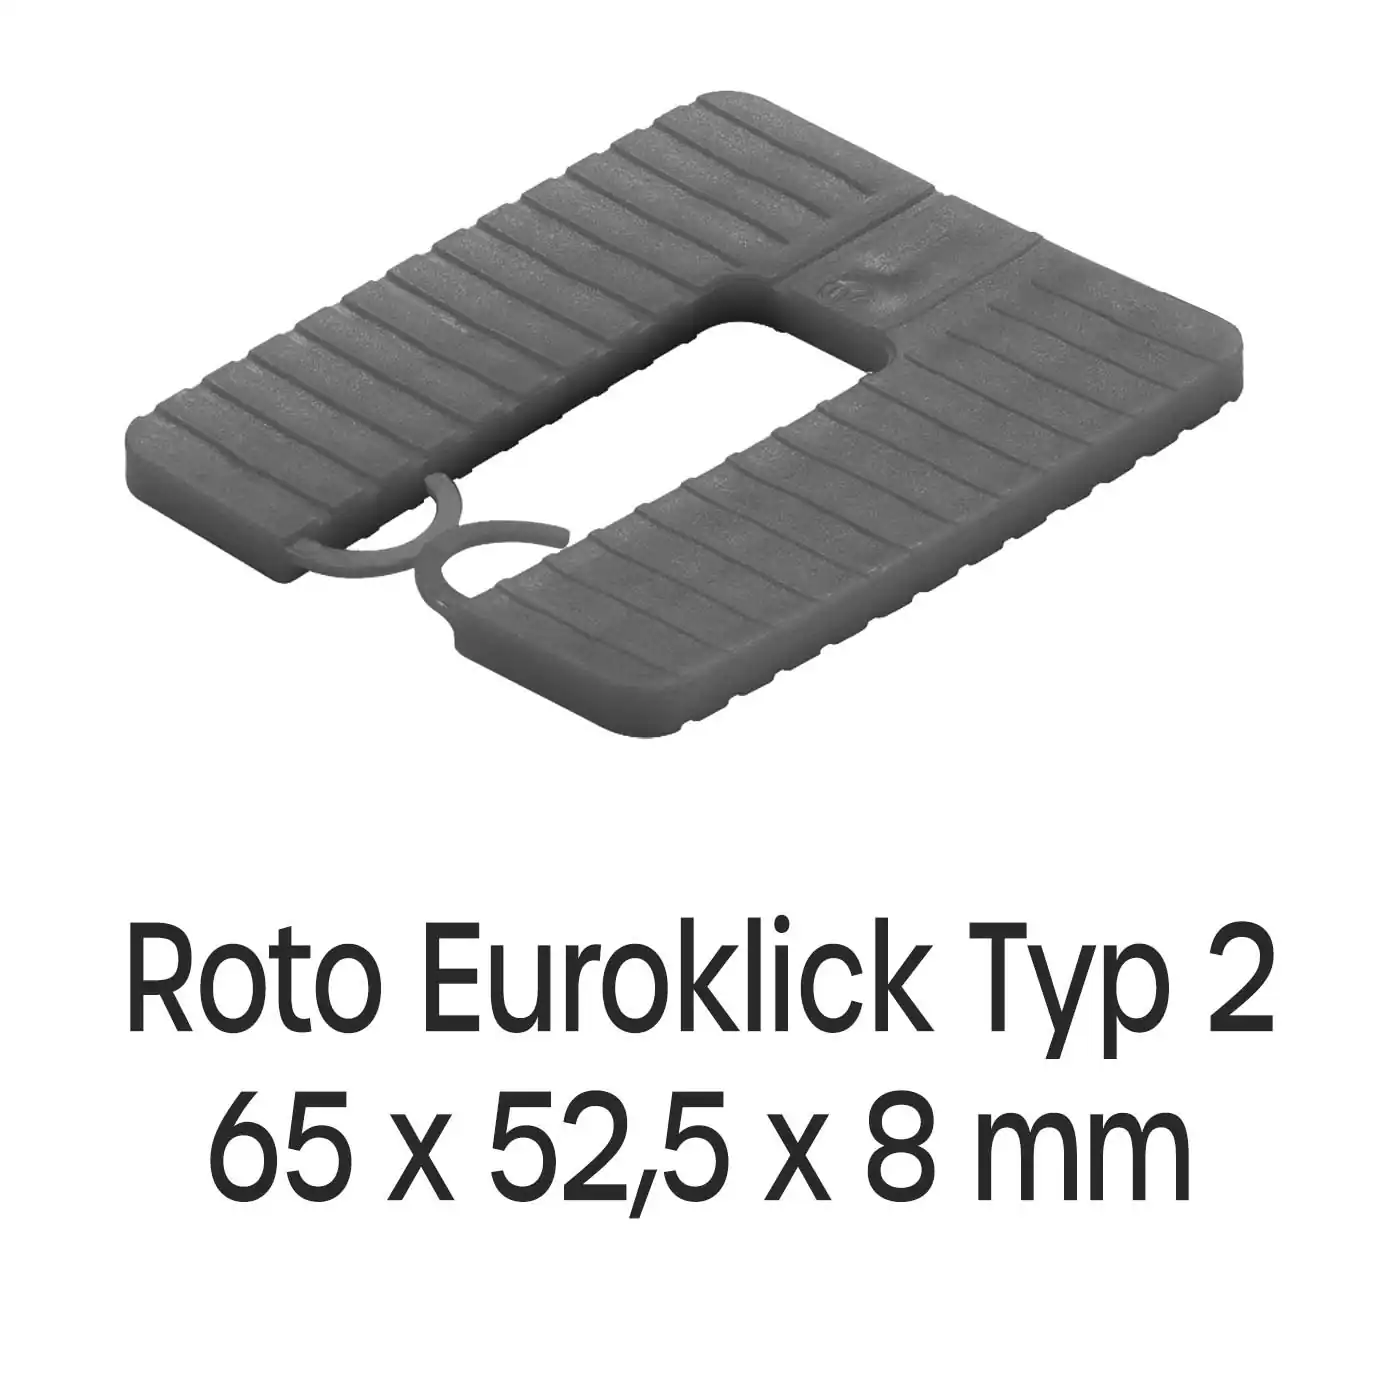 Distanzplatten Roto Euroklick Typ 2 65 x 52,5 x 8 mm 500 Stück